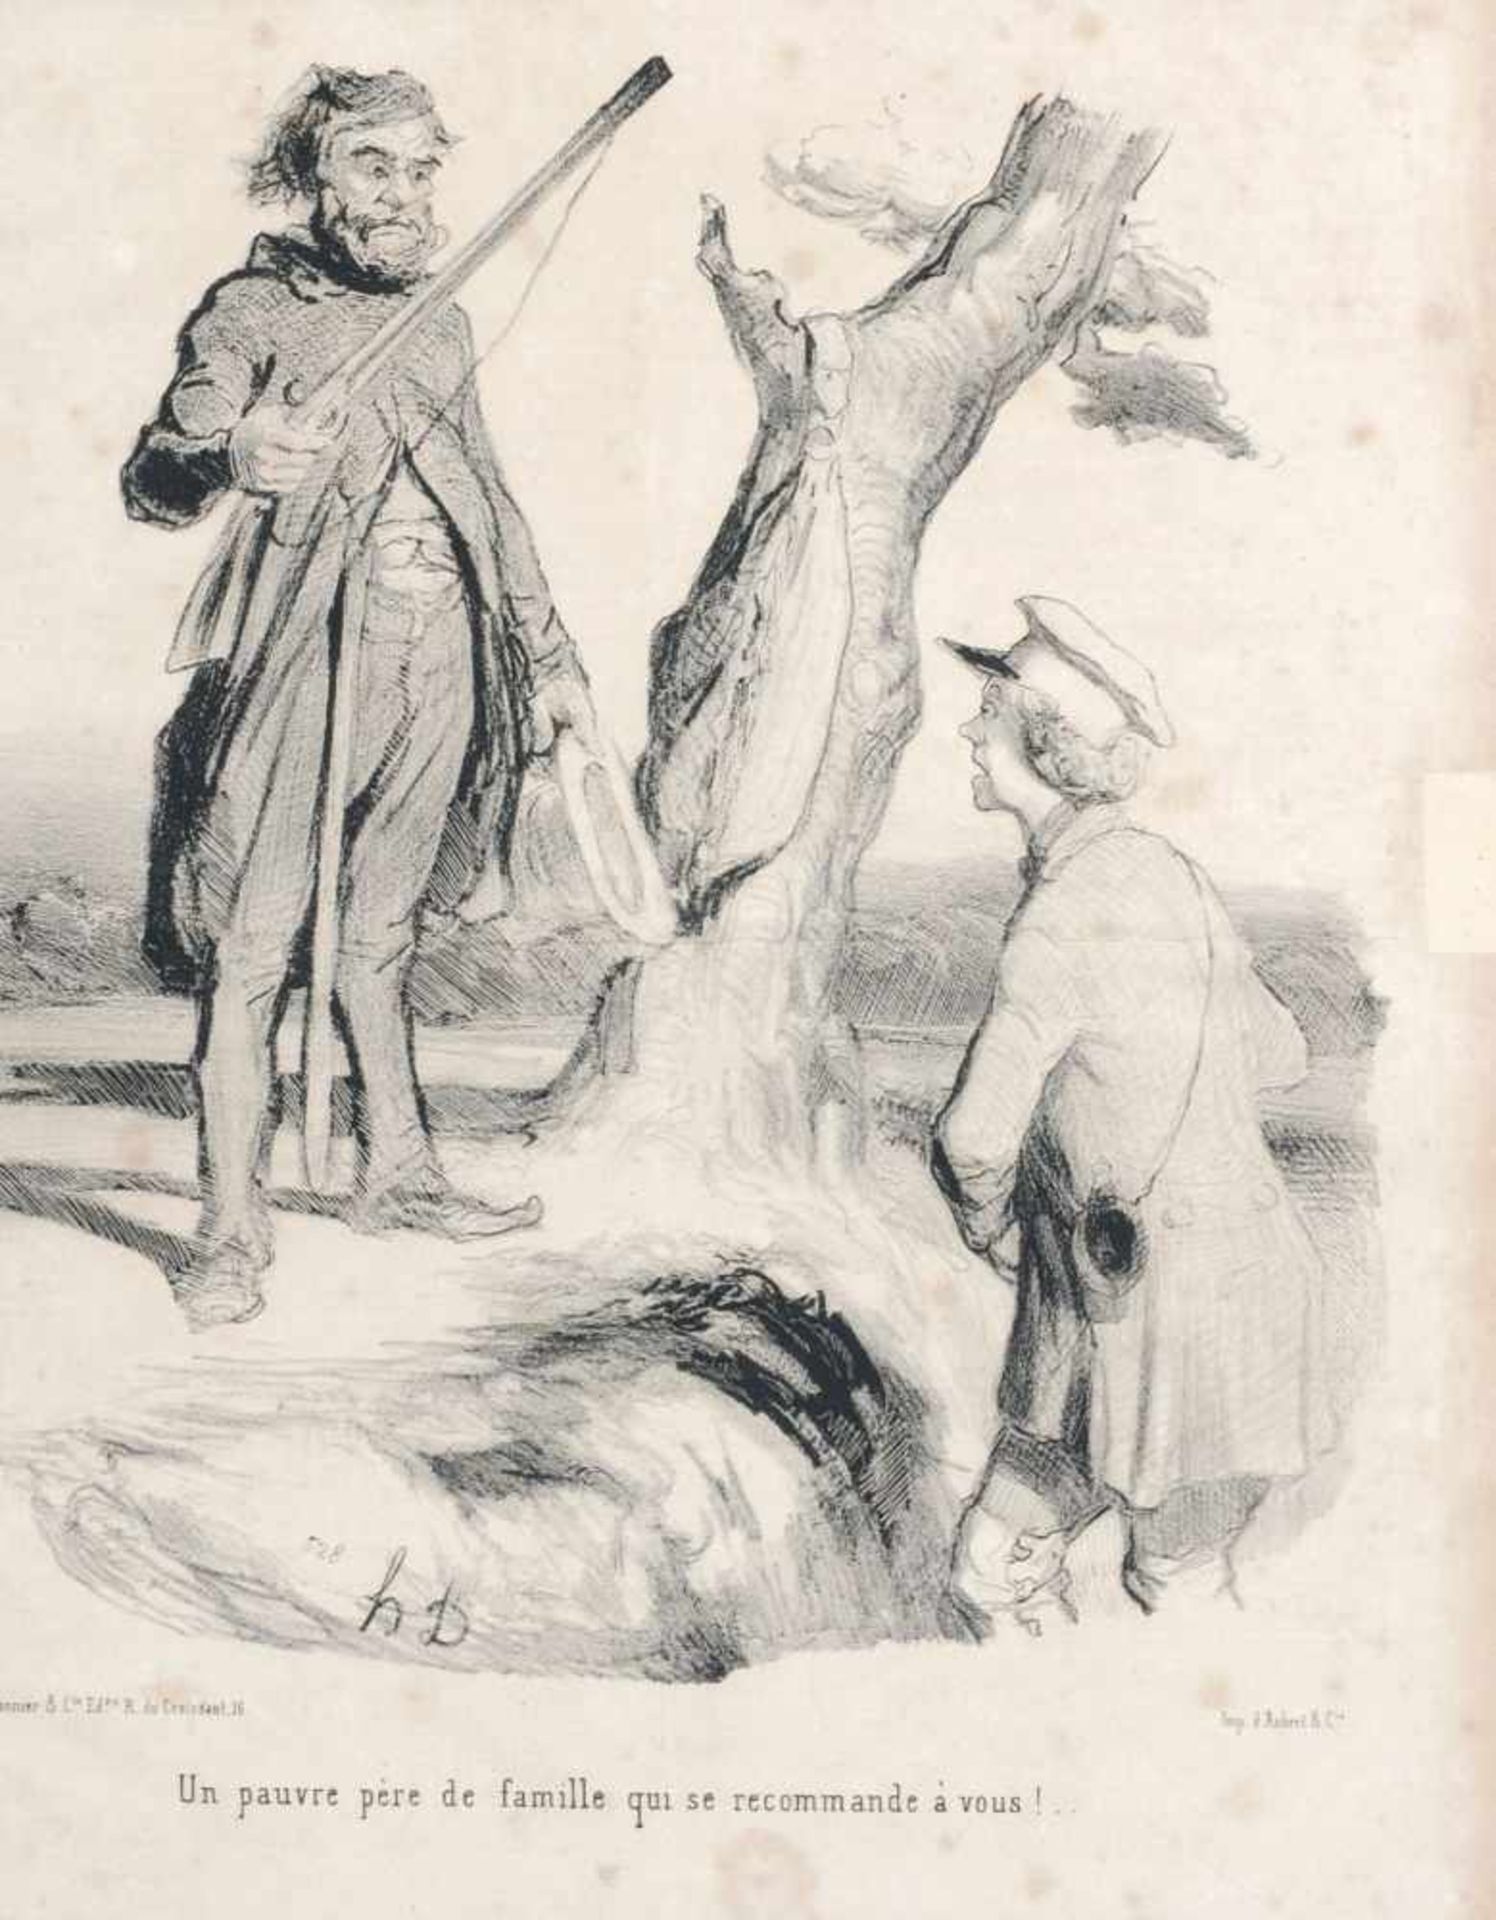 Honoré Daumier, Elf Illustrationen aus der Satire-Zeitschrift "Le Charivari". 2. H. 19. Jh.Honoré - Bild 3 aus 12